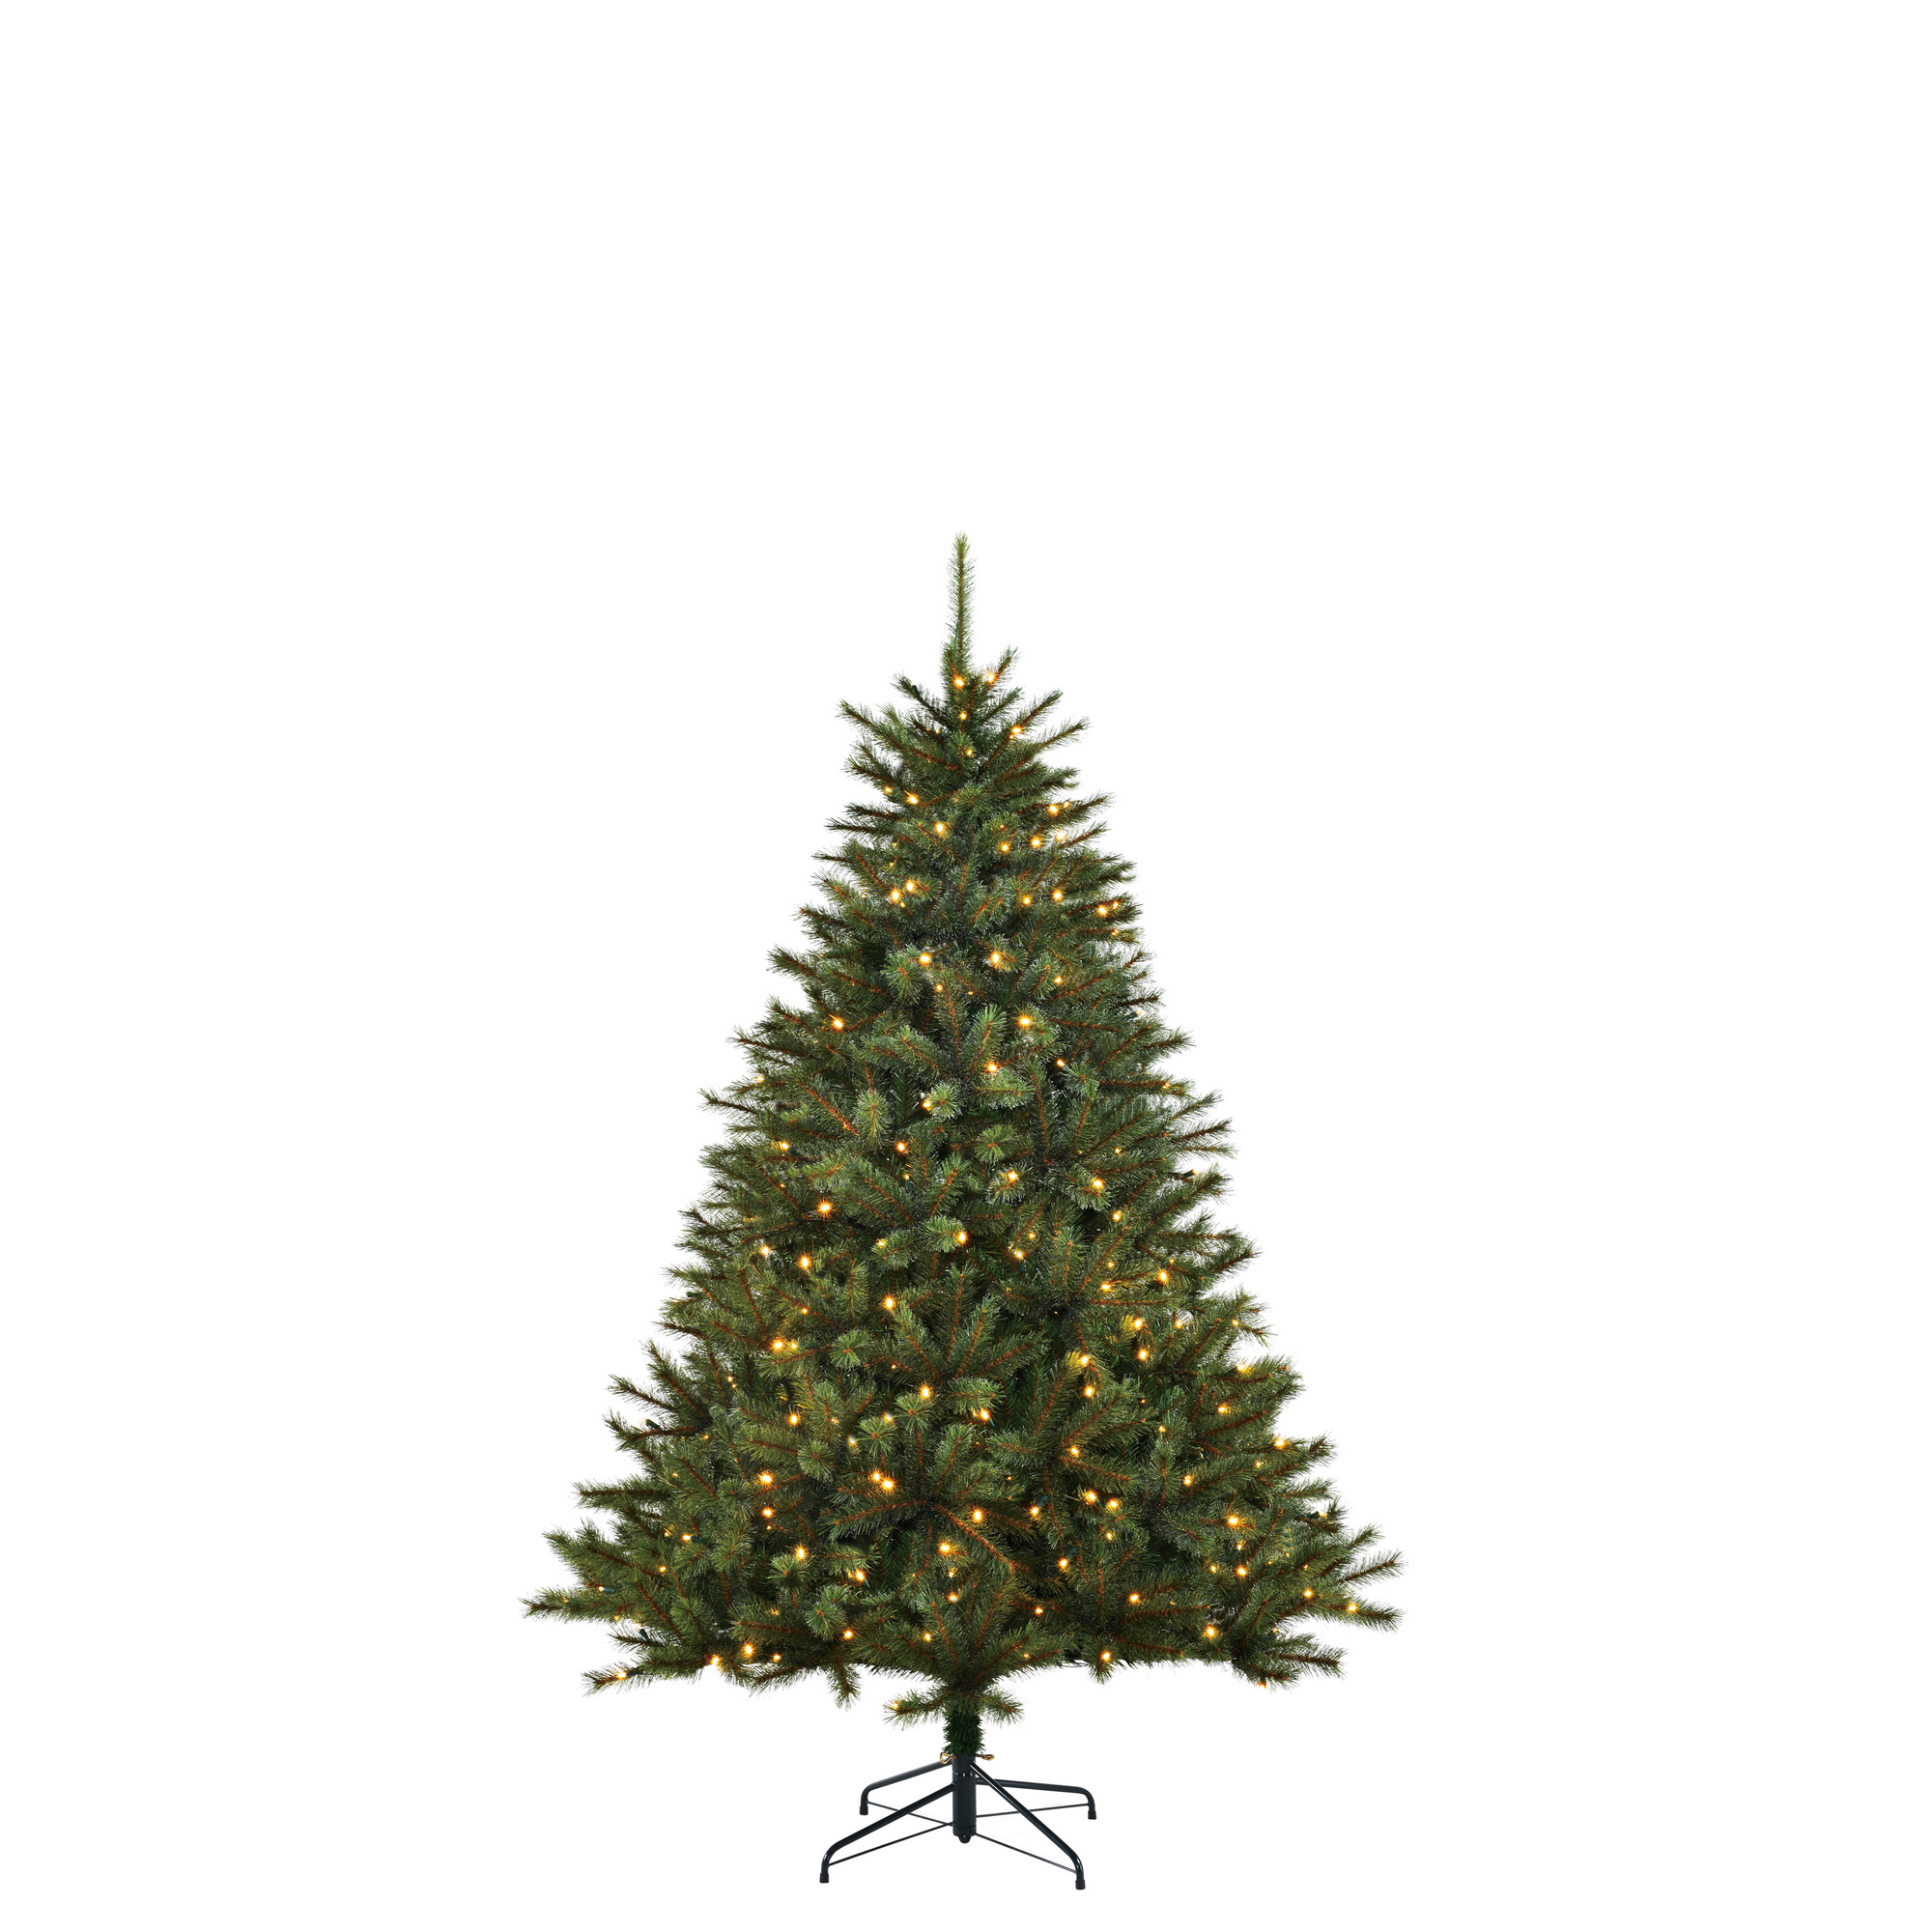 Künstlicher Weihnachtsbaum 'Vail' grün 155 cm, mit LED-Beleuchtung + product picture